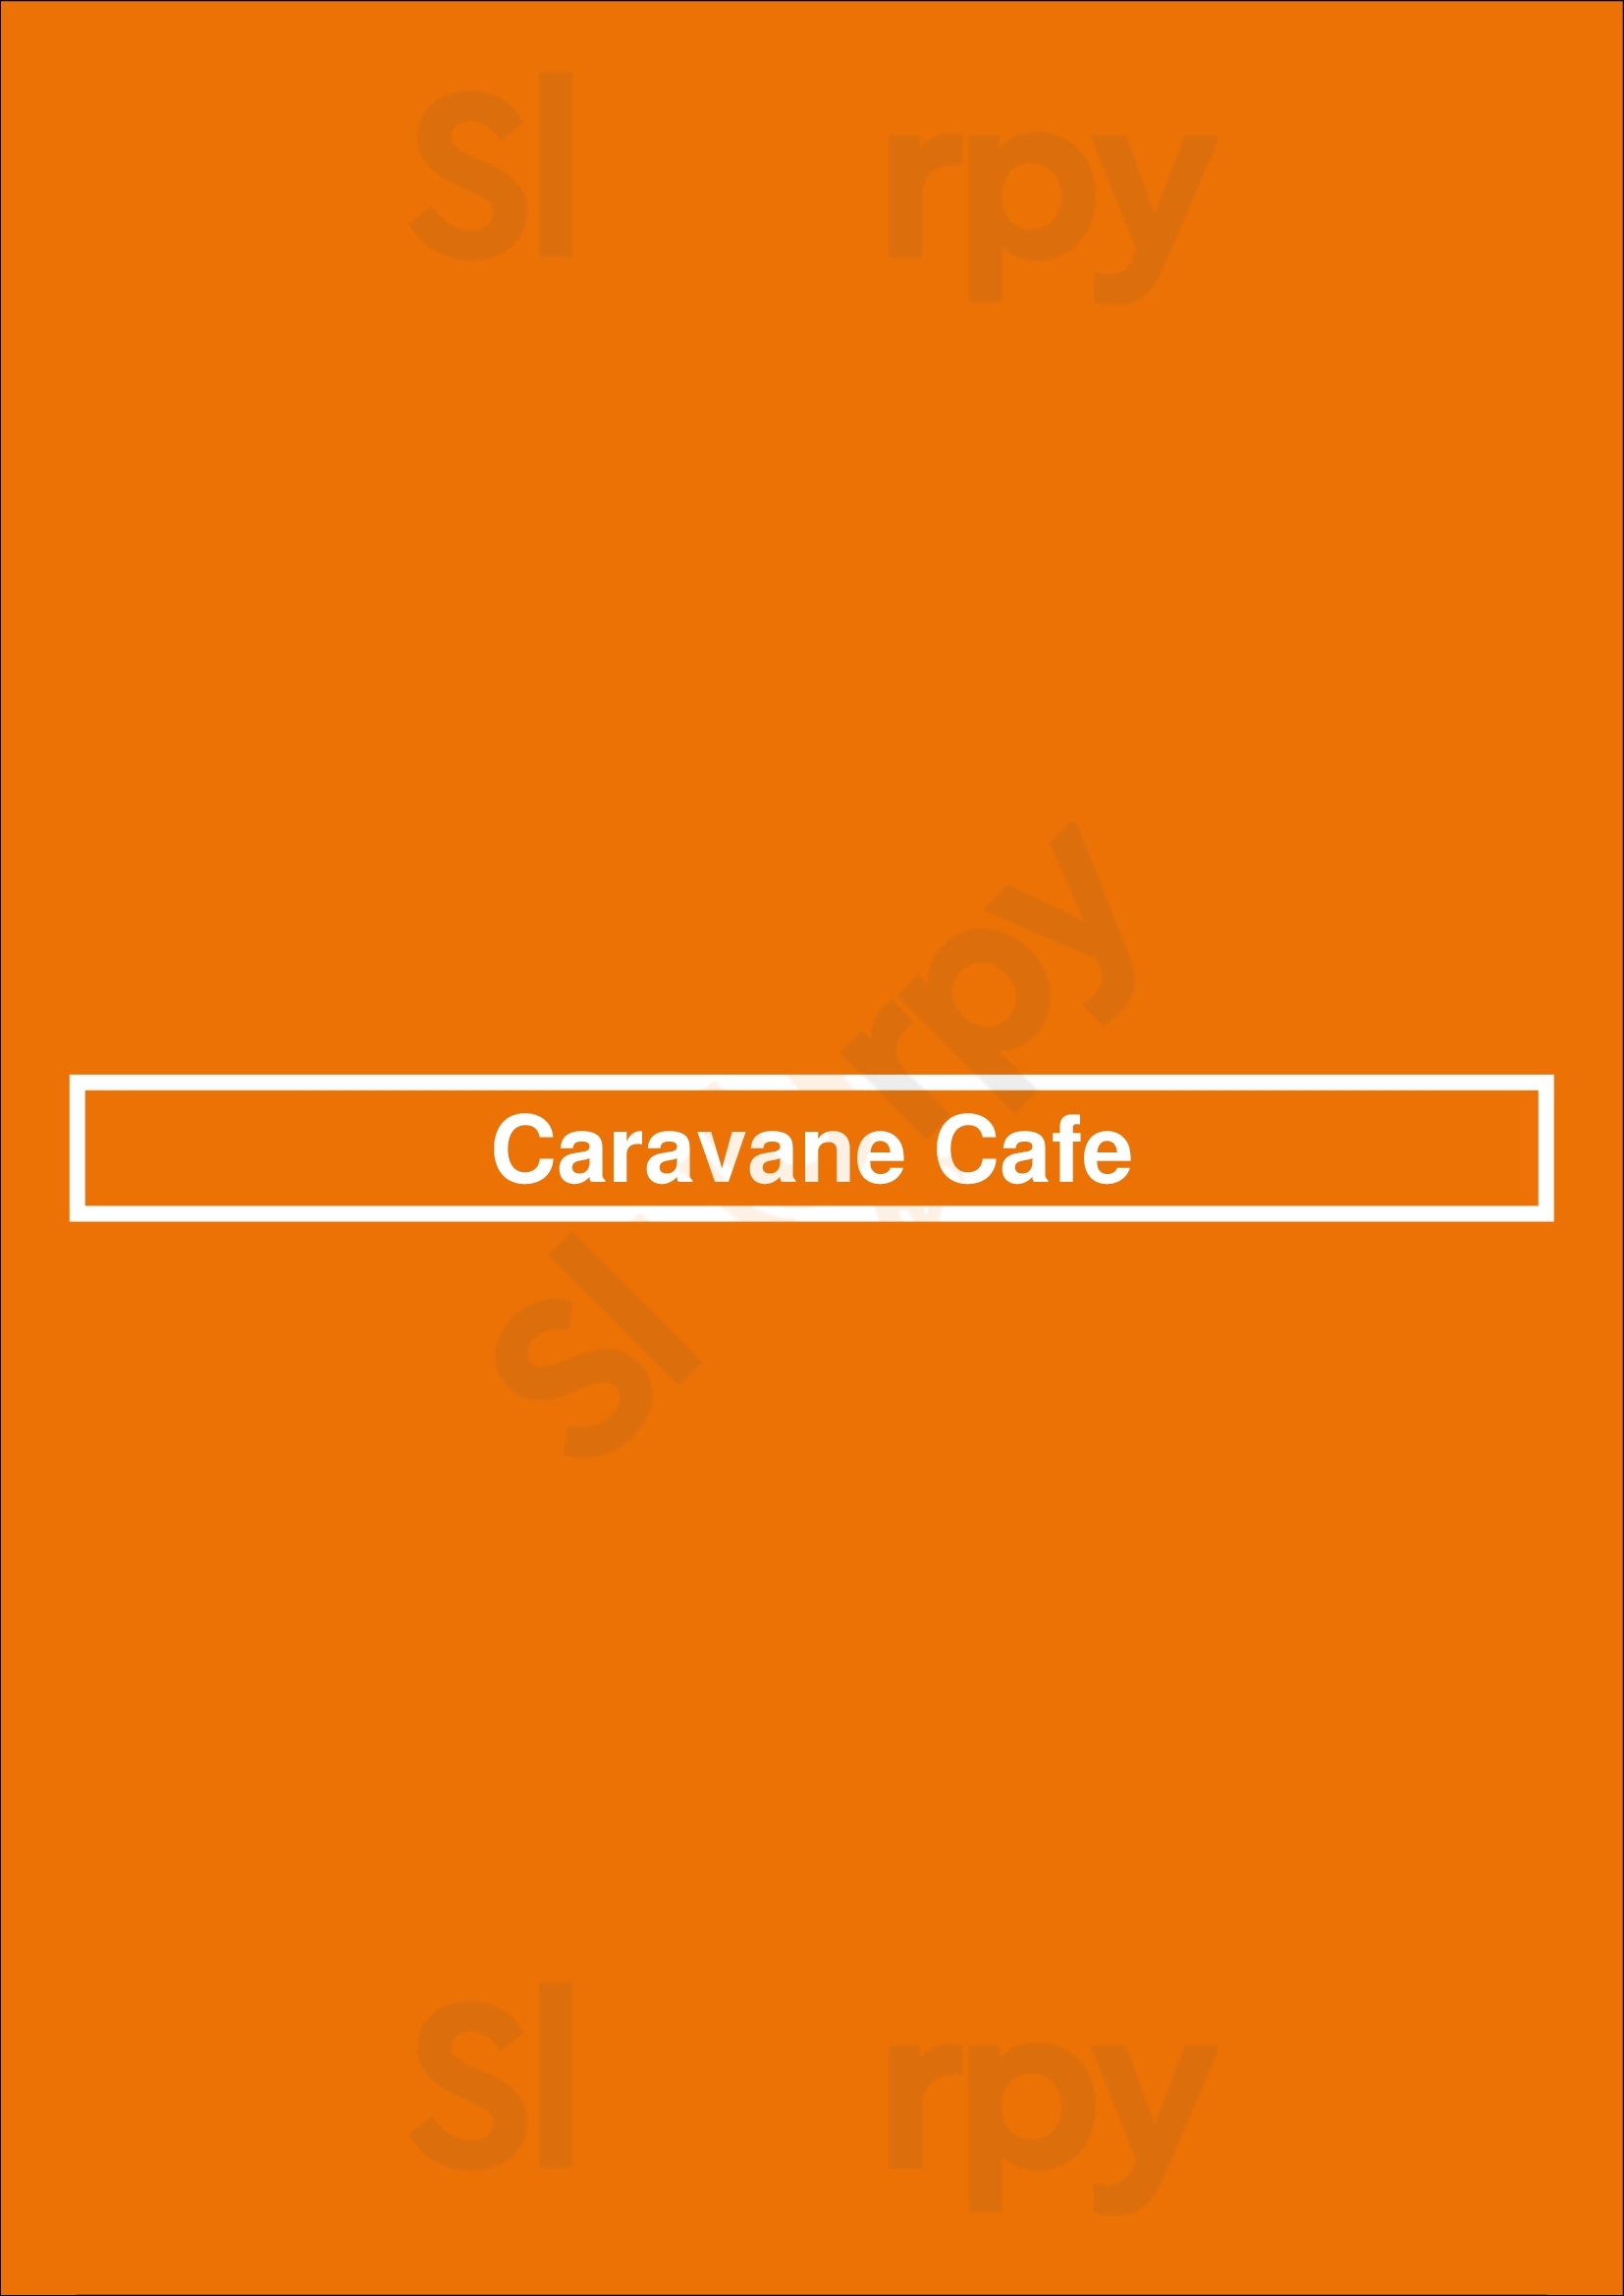 Caravane Cafe Montreal Menu - 1